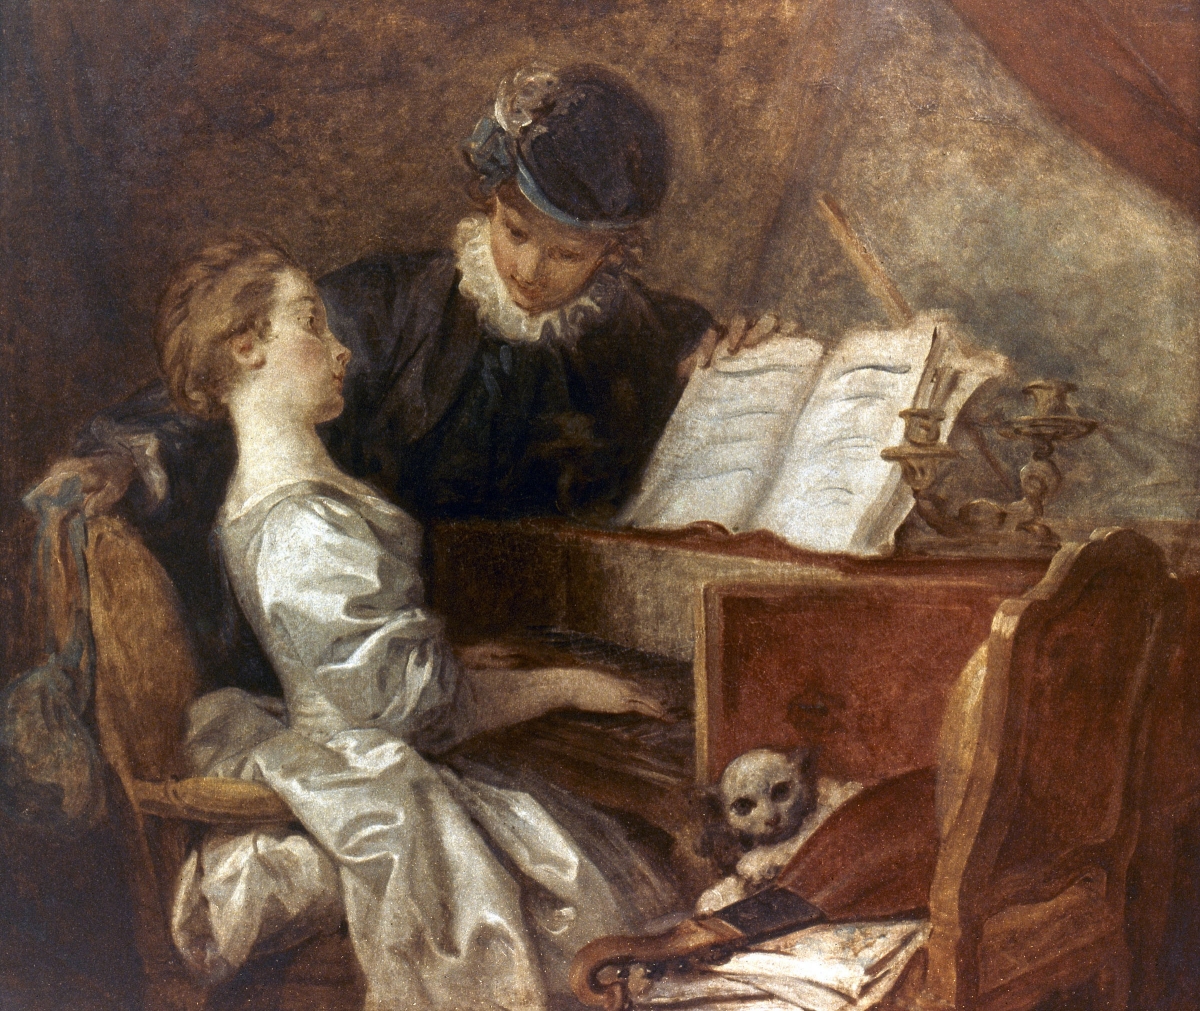 La leçon de musique tableau peint par Jean-Honoré Fragonard